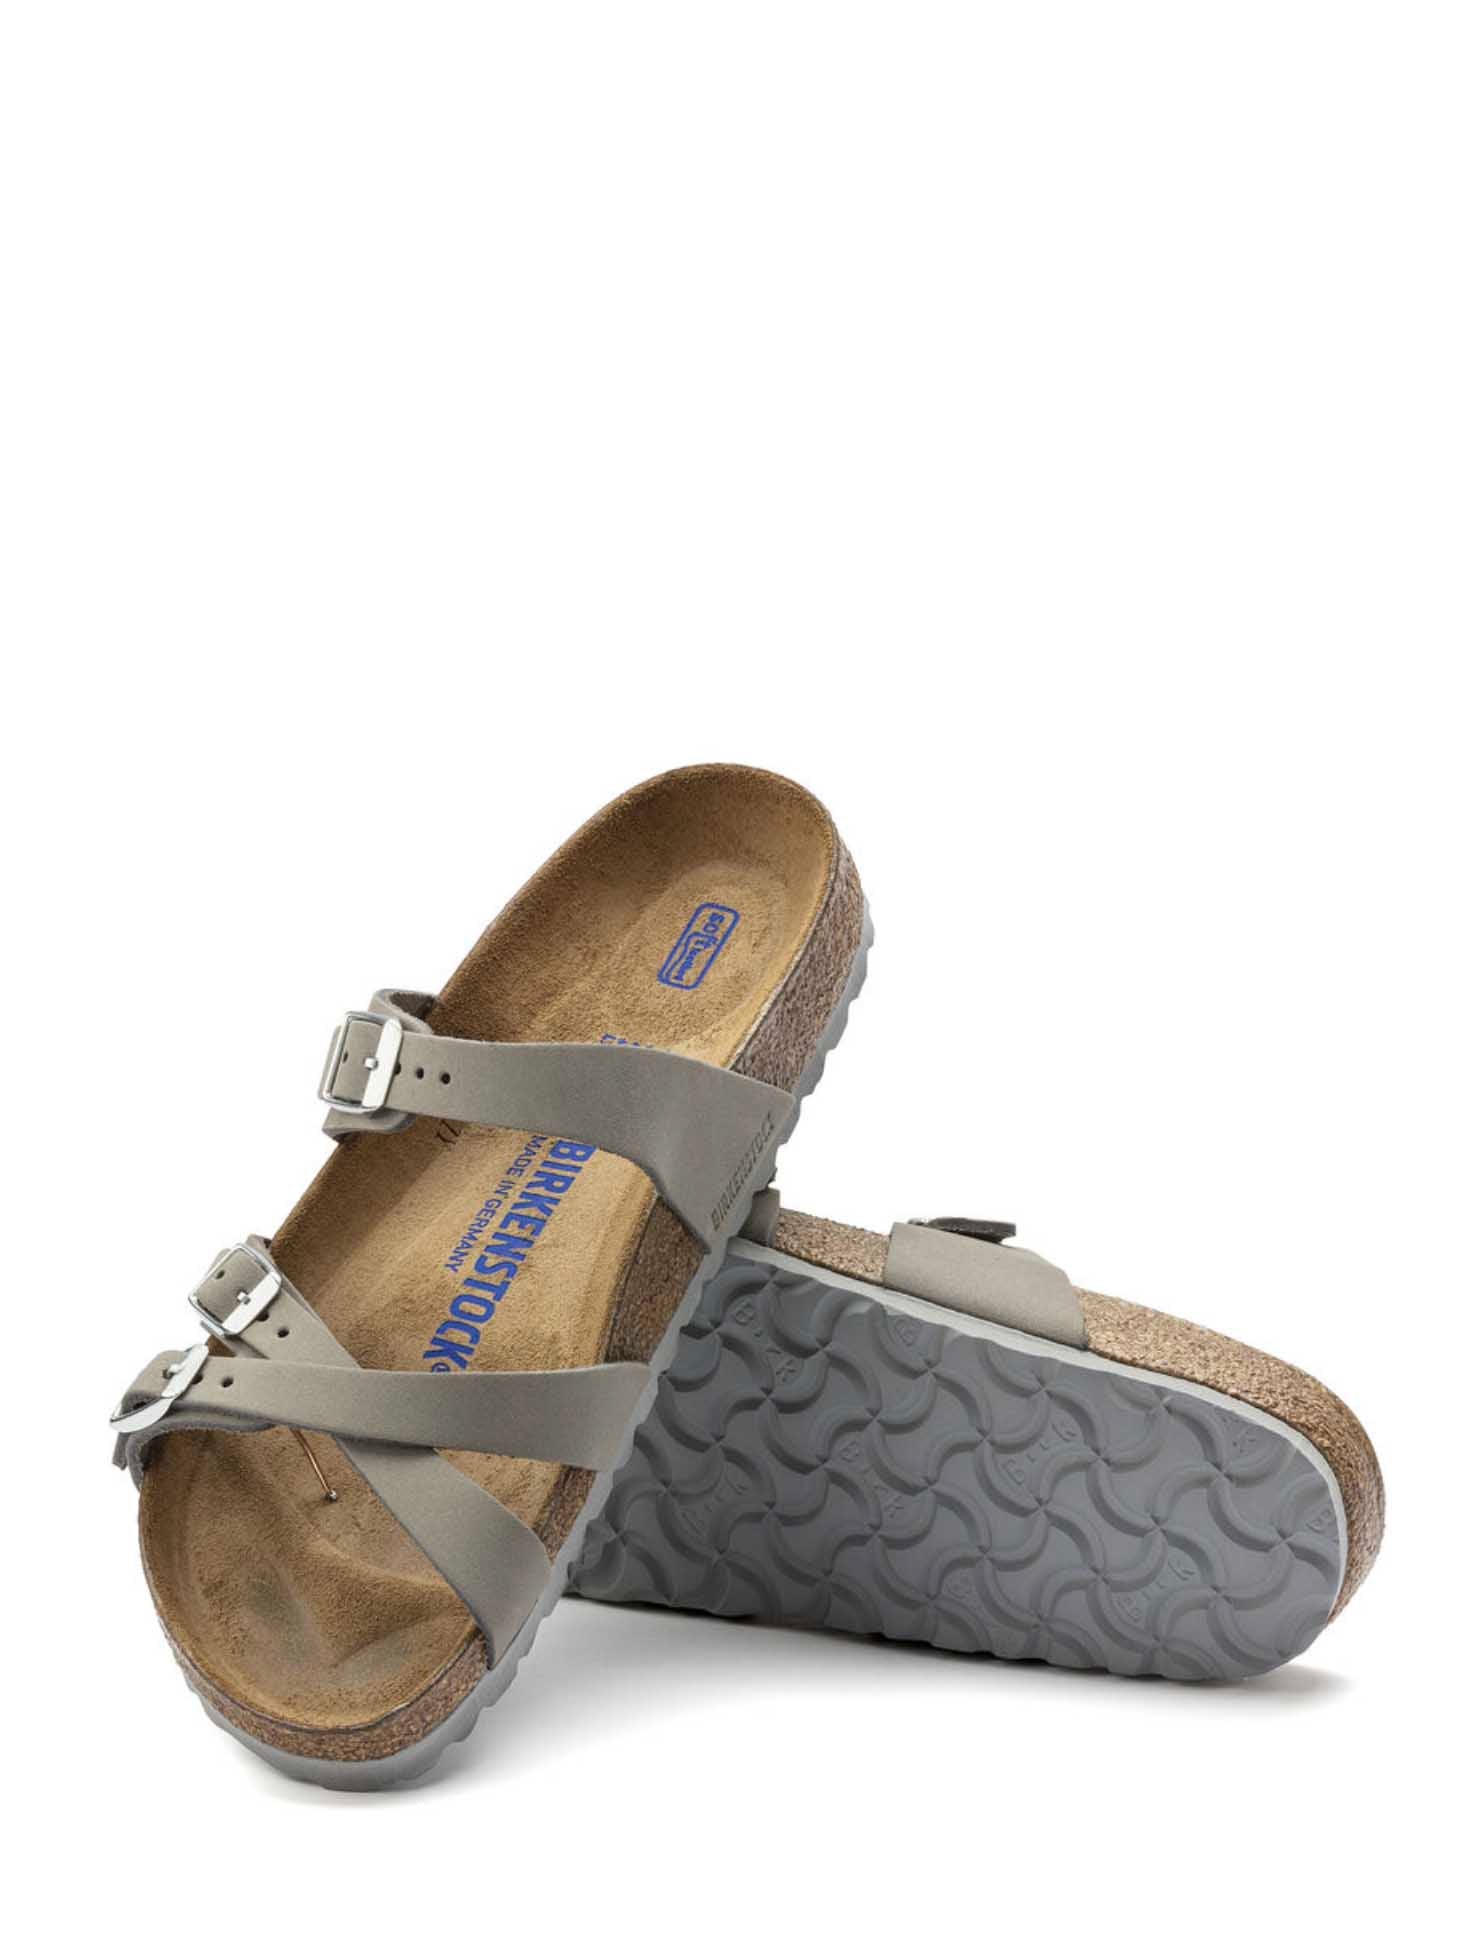 Birkenstock Franca Sandal in Dove Grey